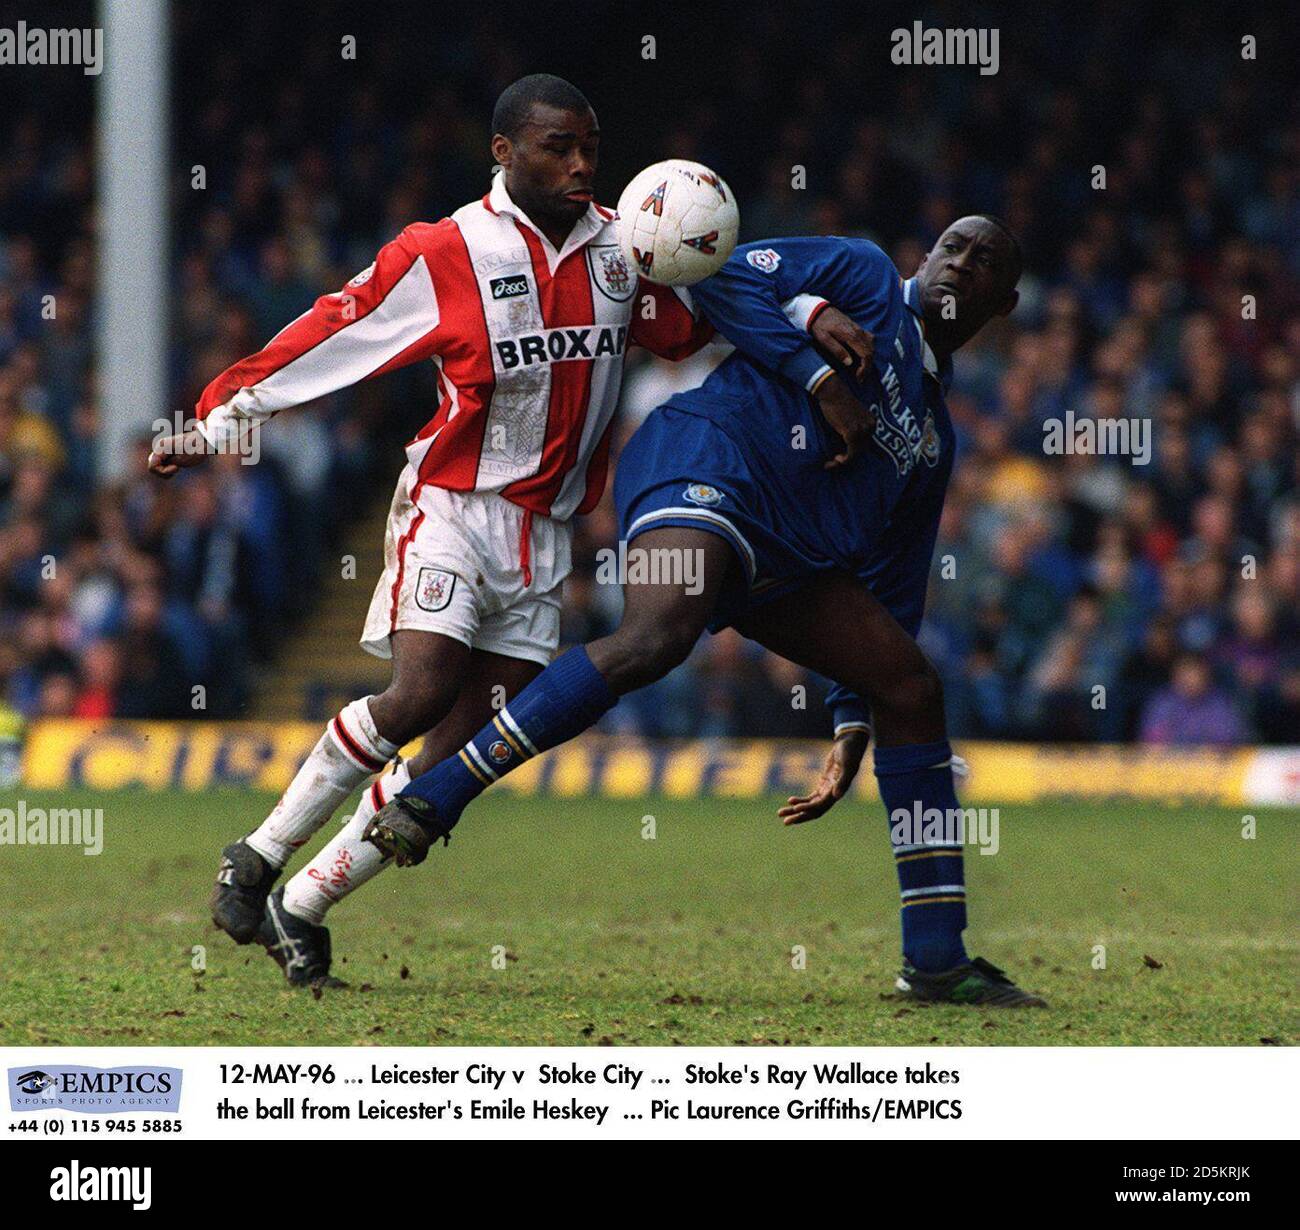 12-MAY-96... Leicester City v Stoke City... Stoke's Ray Wallace toma el balón de Emile Heskey de Leicester Foto de stock